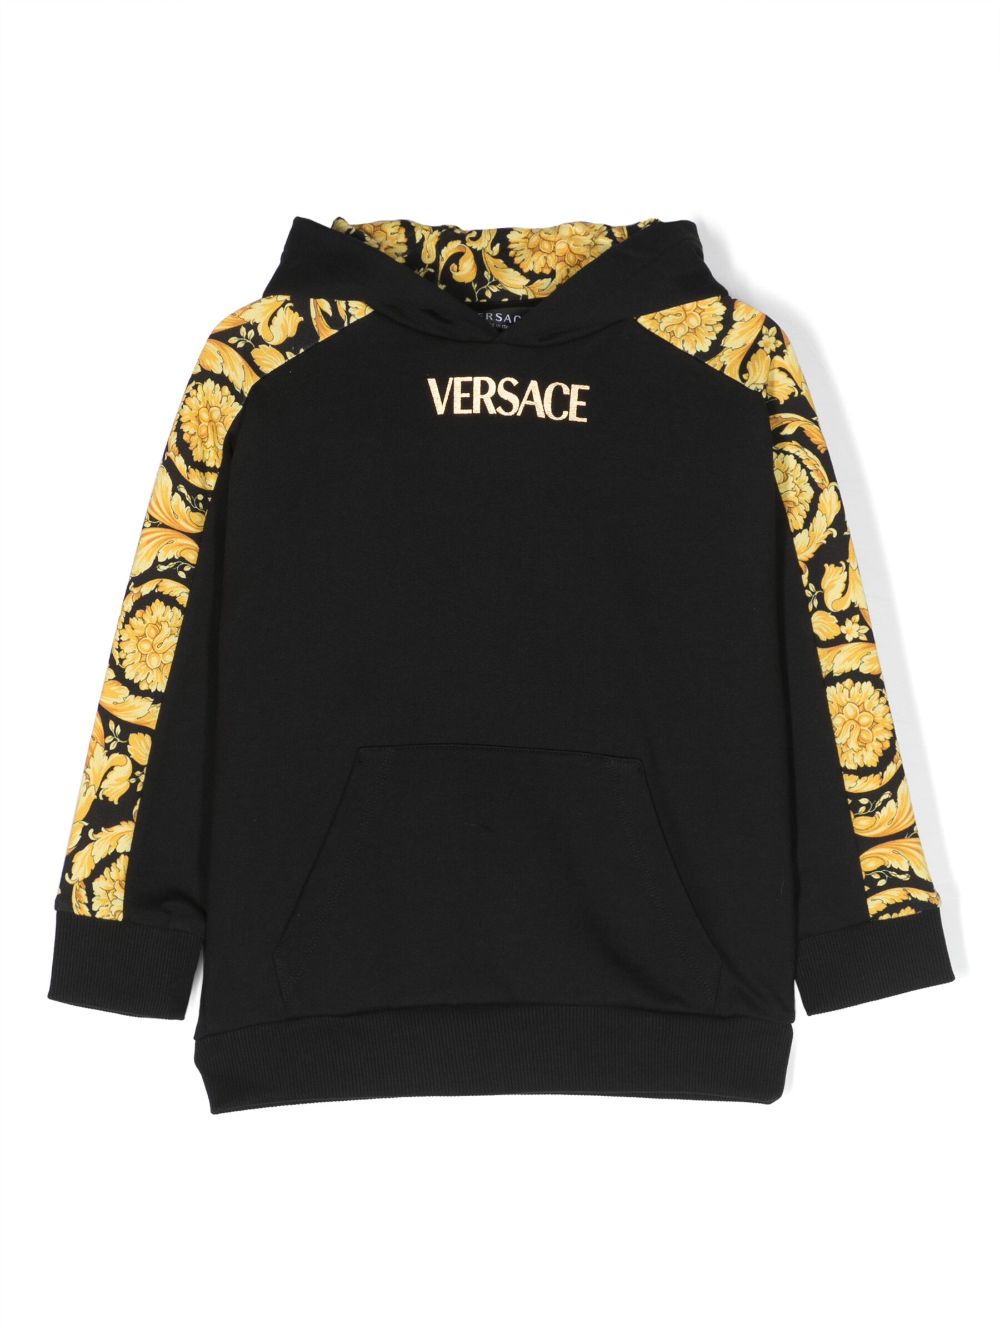 Versace Kids hooded sweatshirt